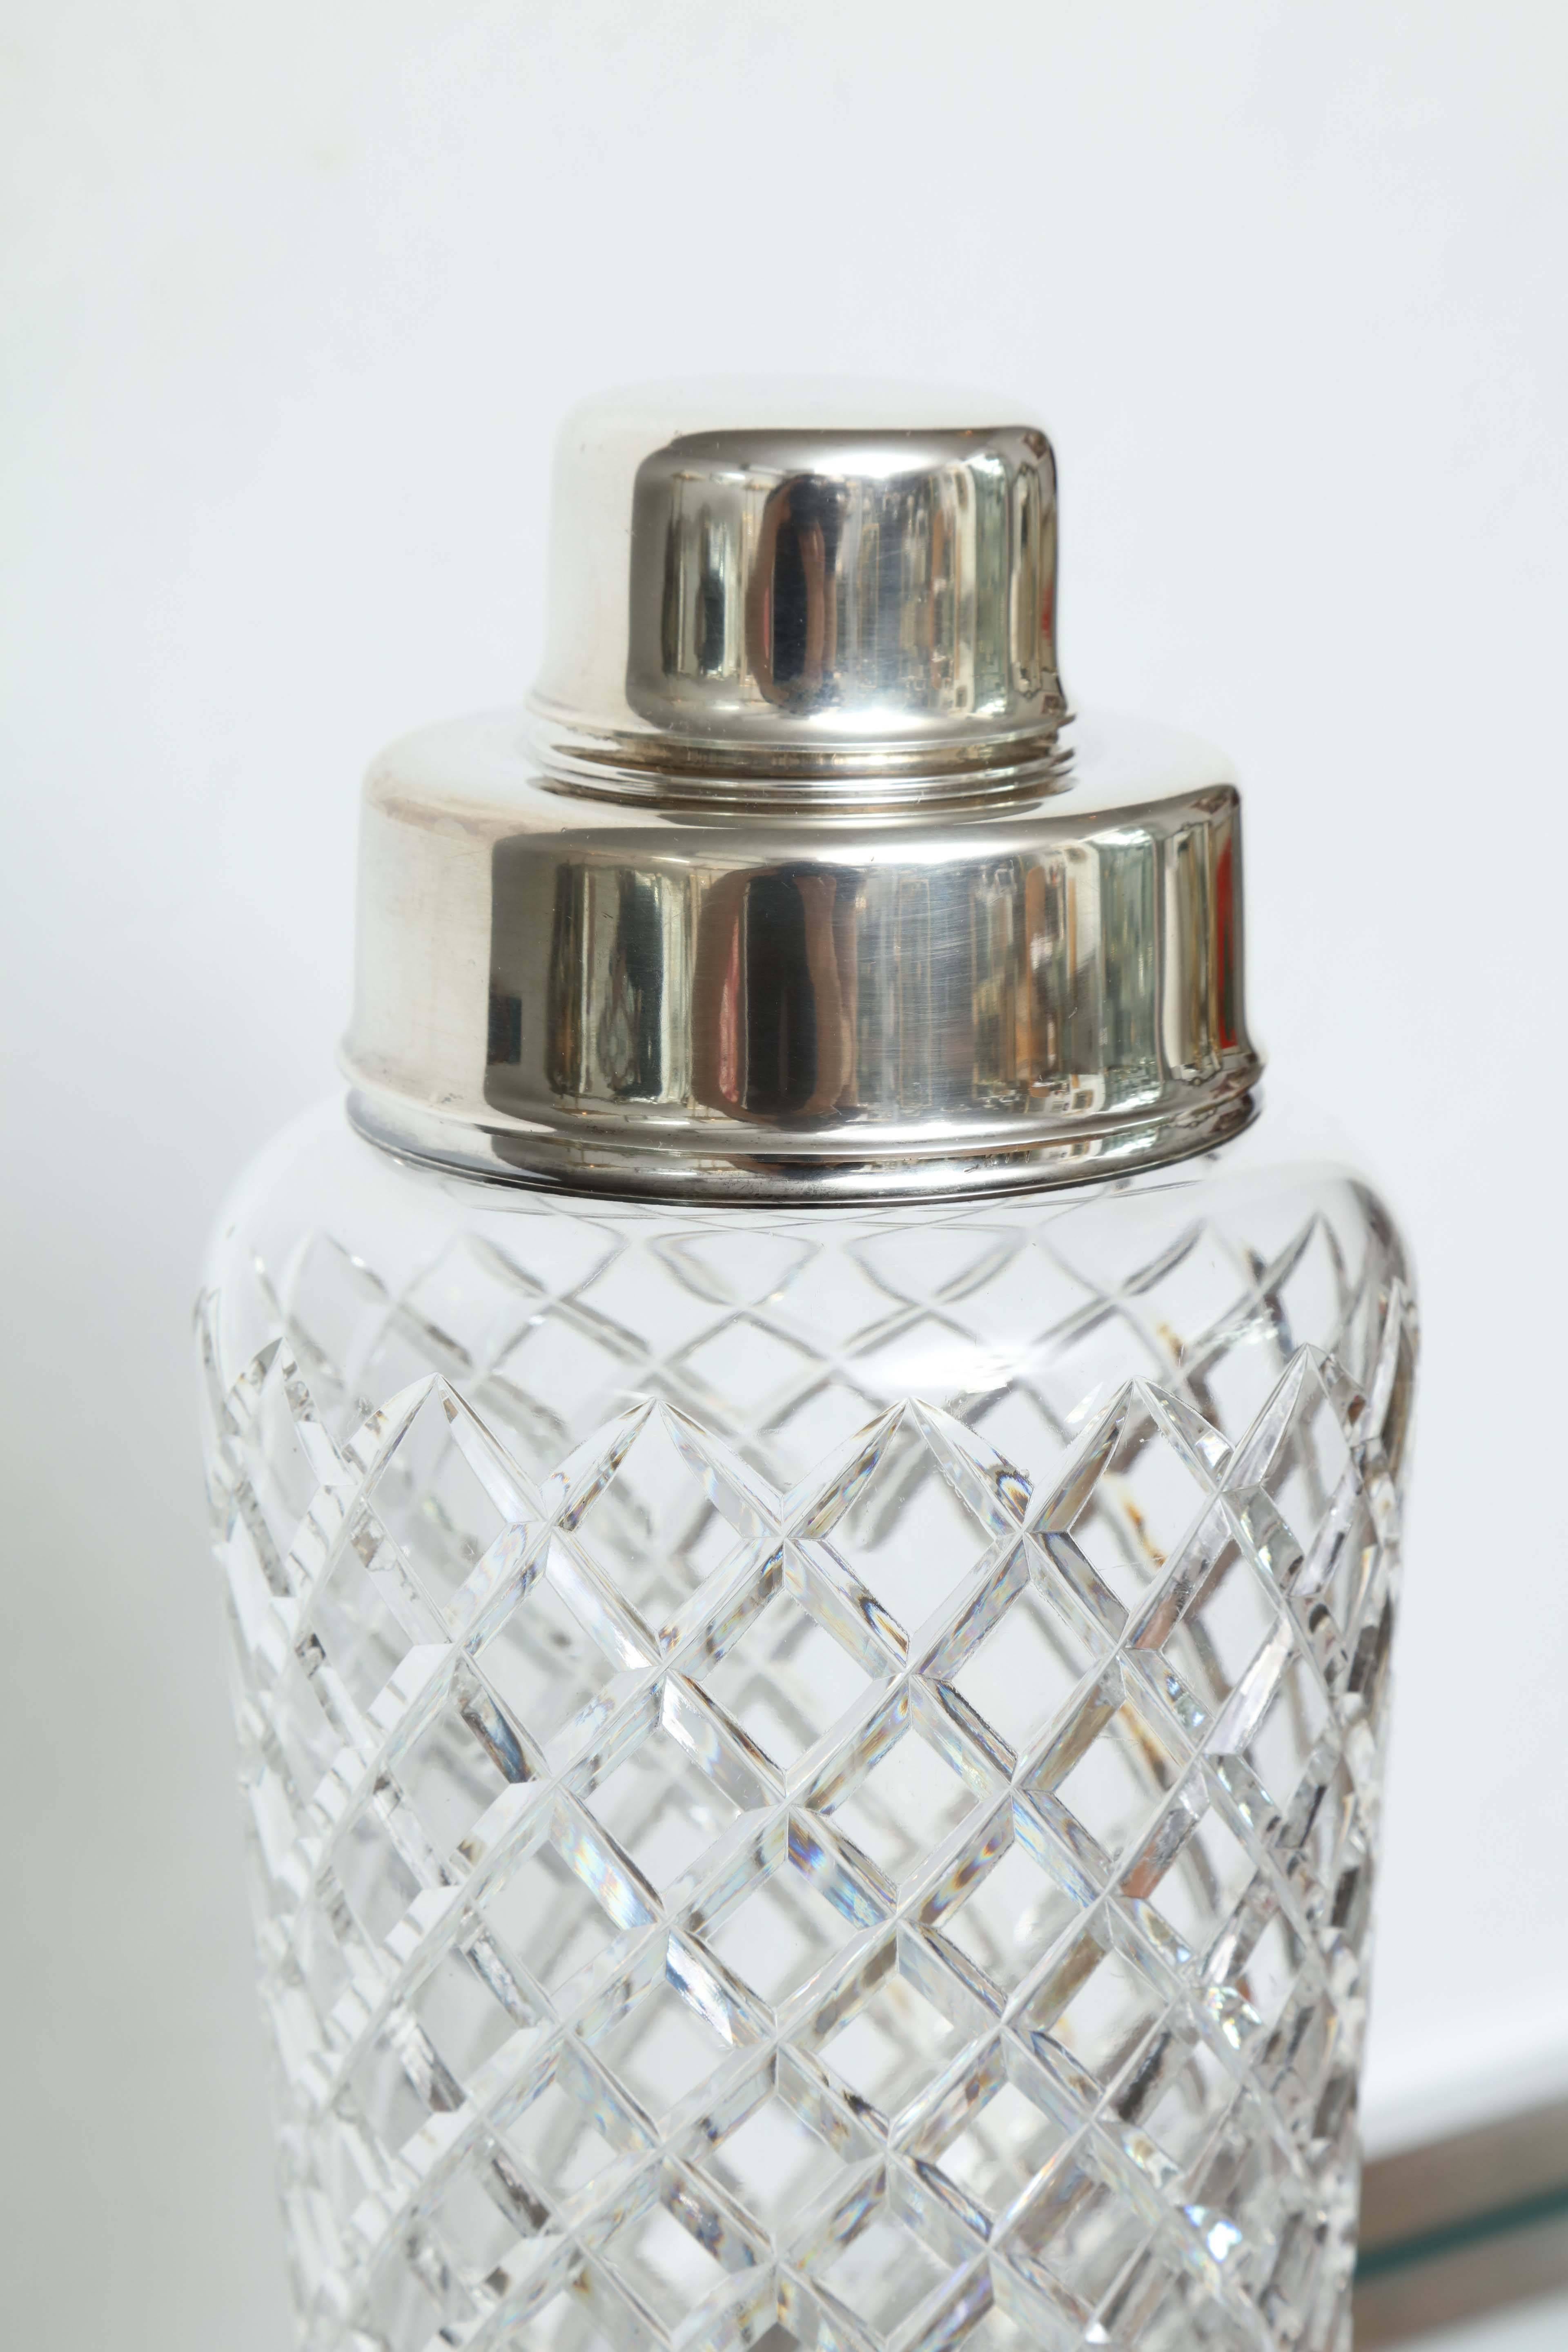 Tiffany und Co Sterling Silber und Kristall Cocktail Shaker (amerikanisch)